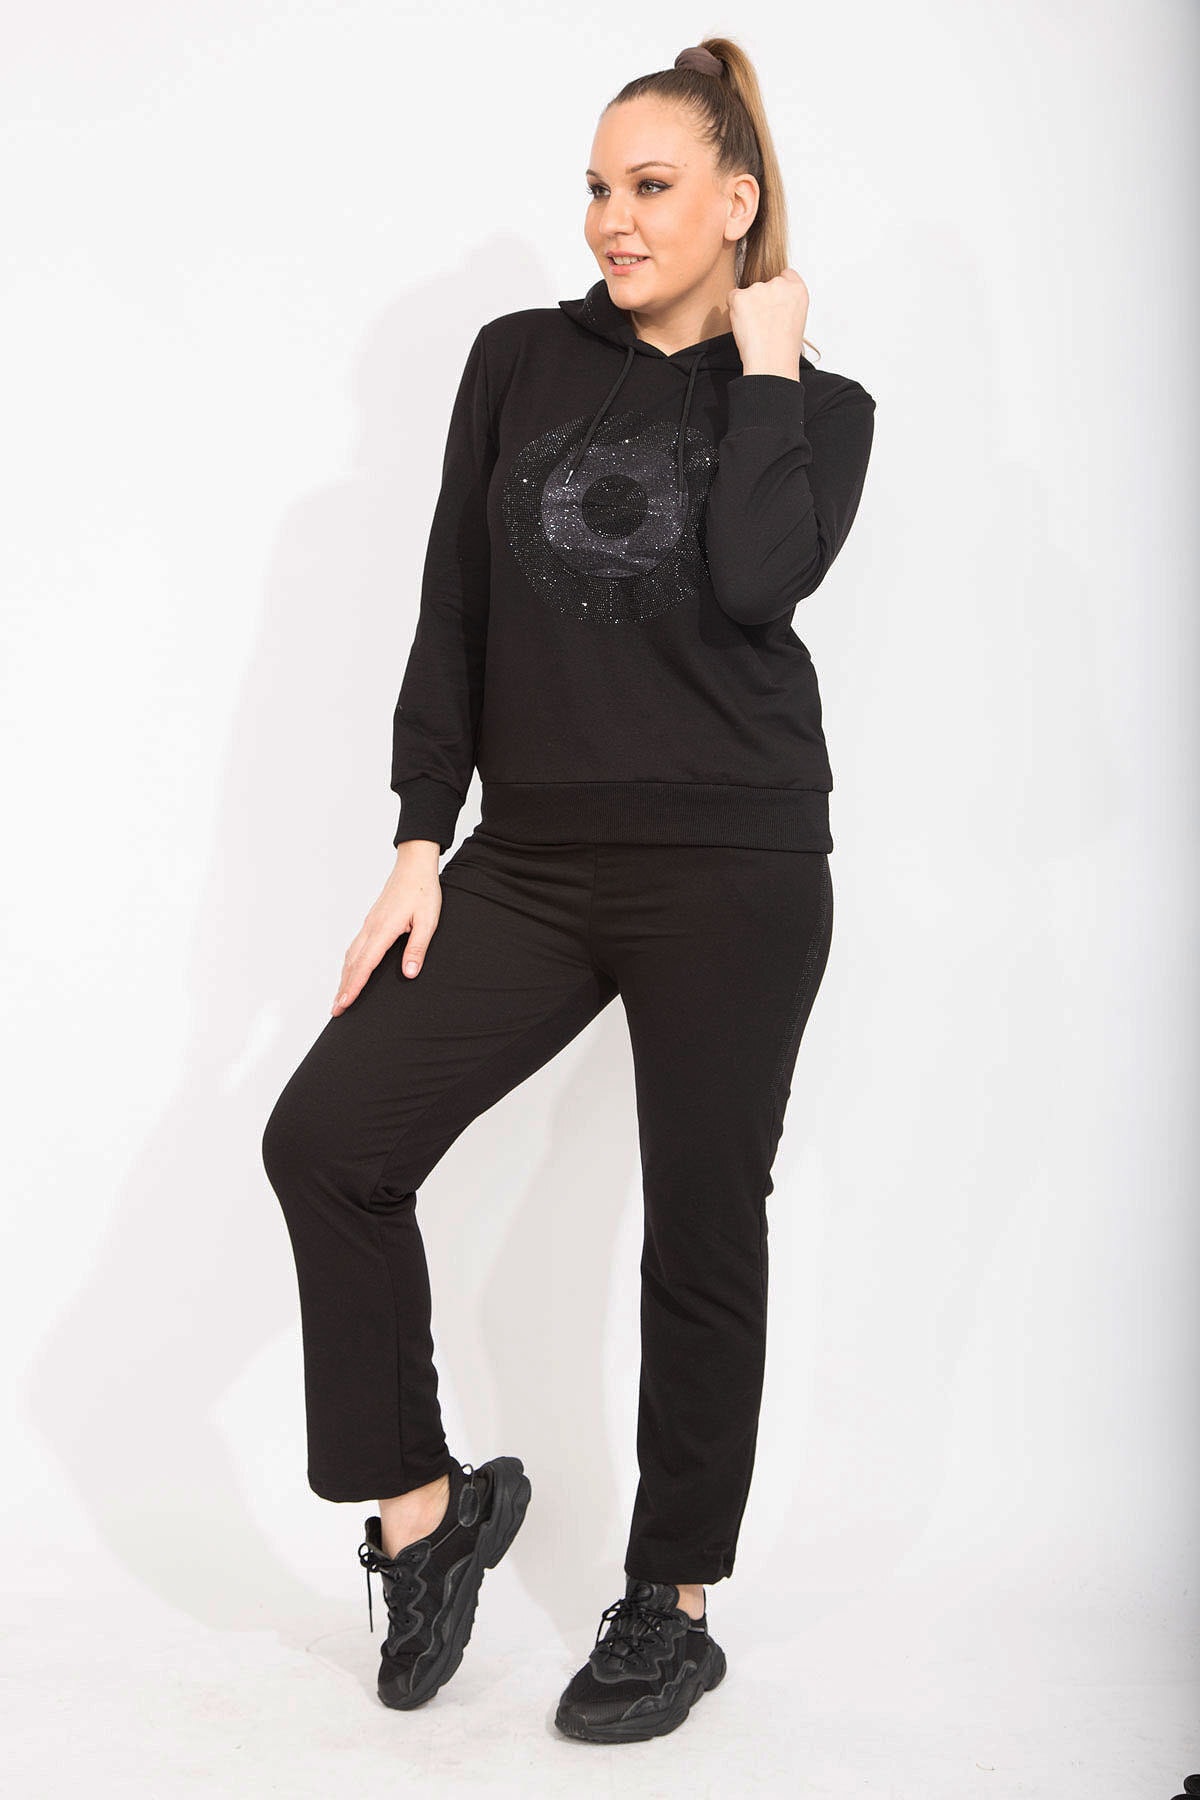 Levně Şans Women's Plus Size Black Stone Detail Hooded Sweatshirt Trousers Double Suit